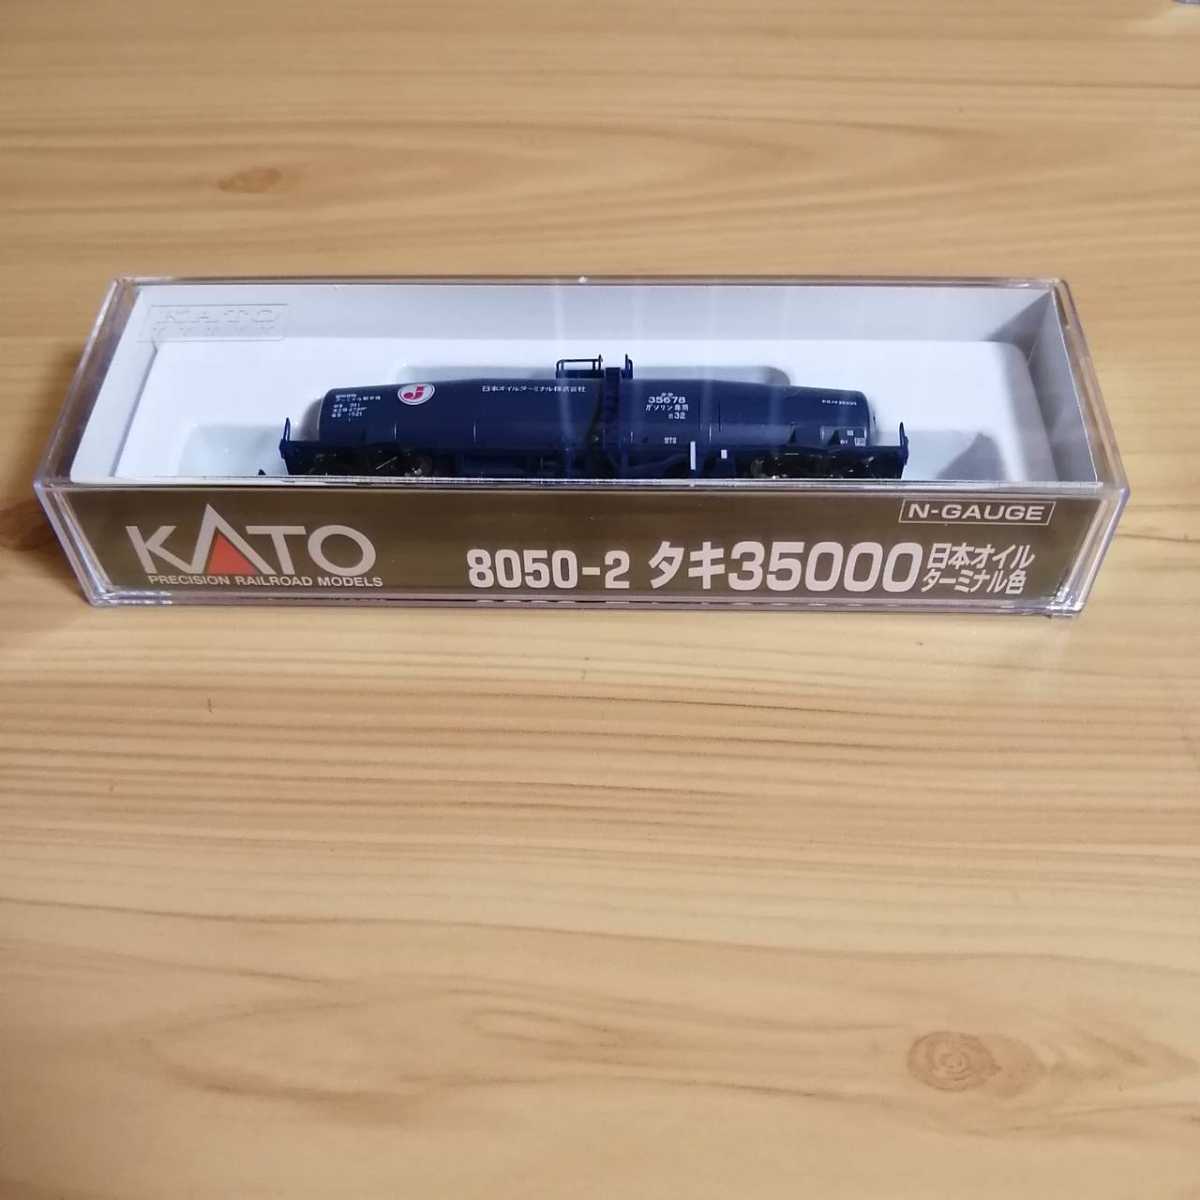 市場 中古 Nゲージ タキ35000 日本石油輸送色 カトー 8050-1 KATO